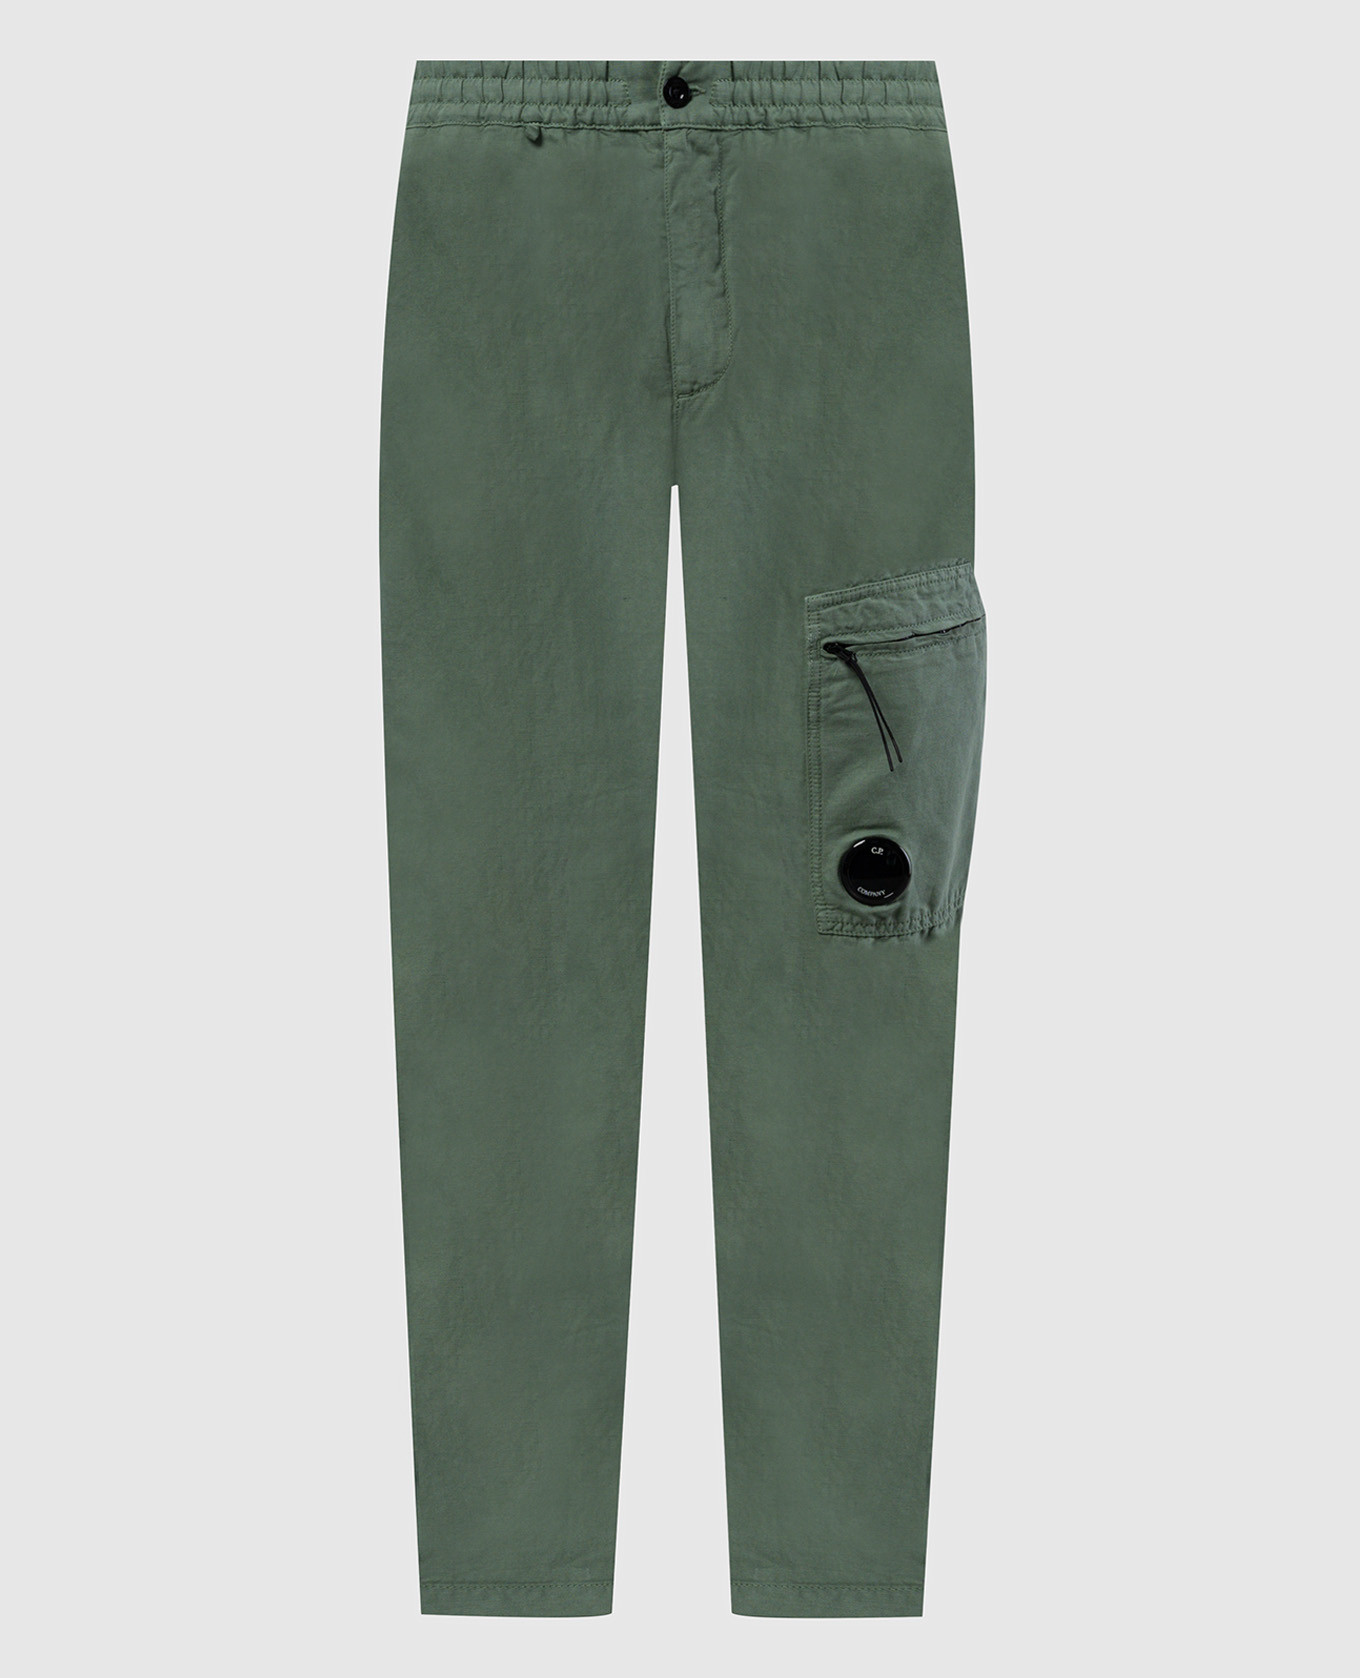 Зеленые брюки с льном с логотипом.